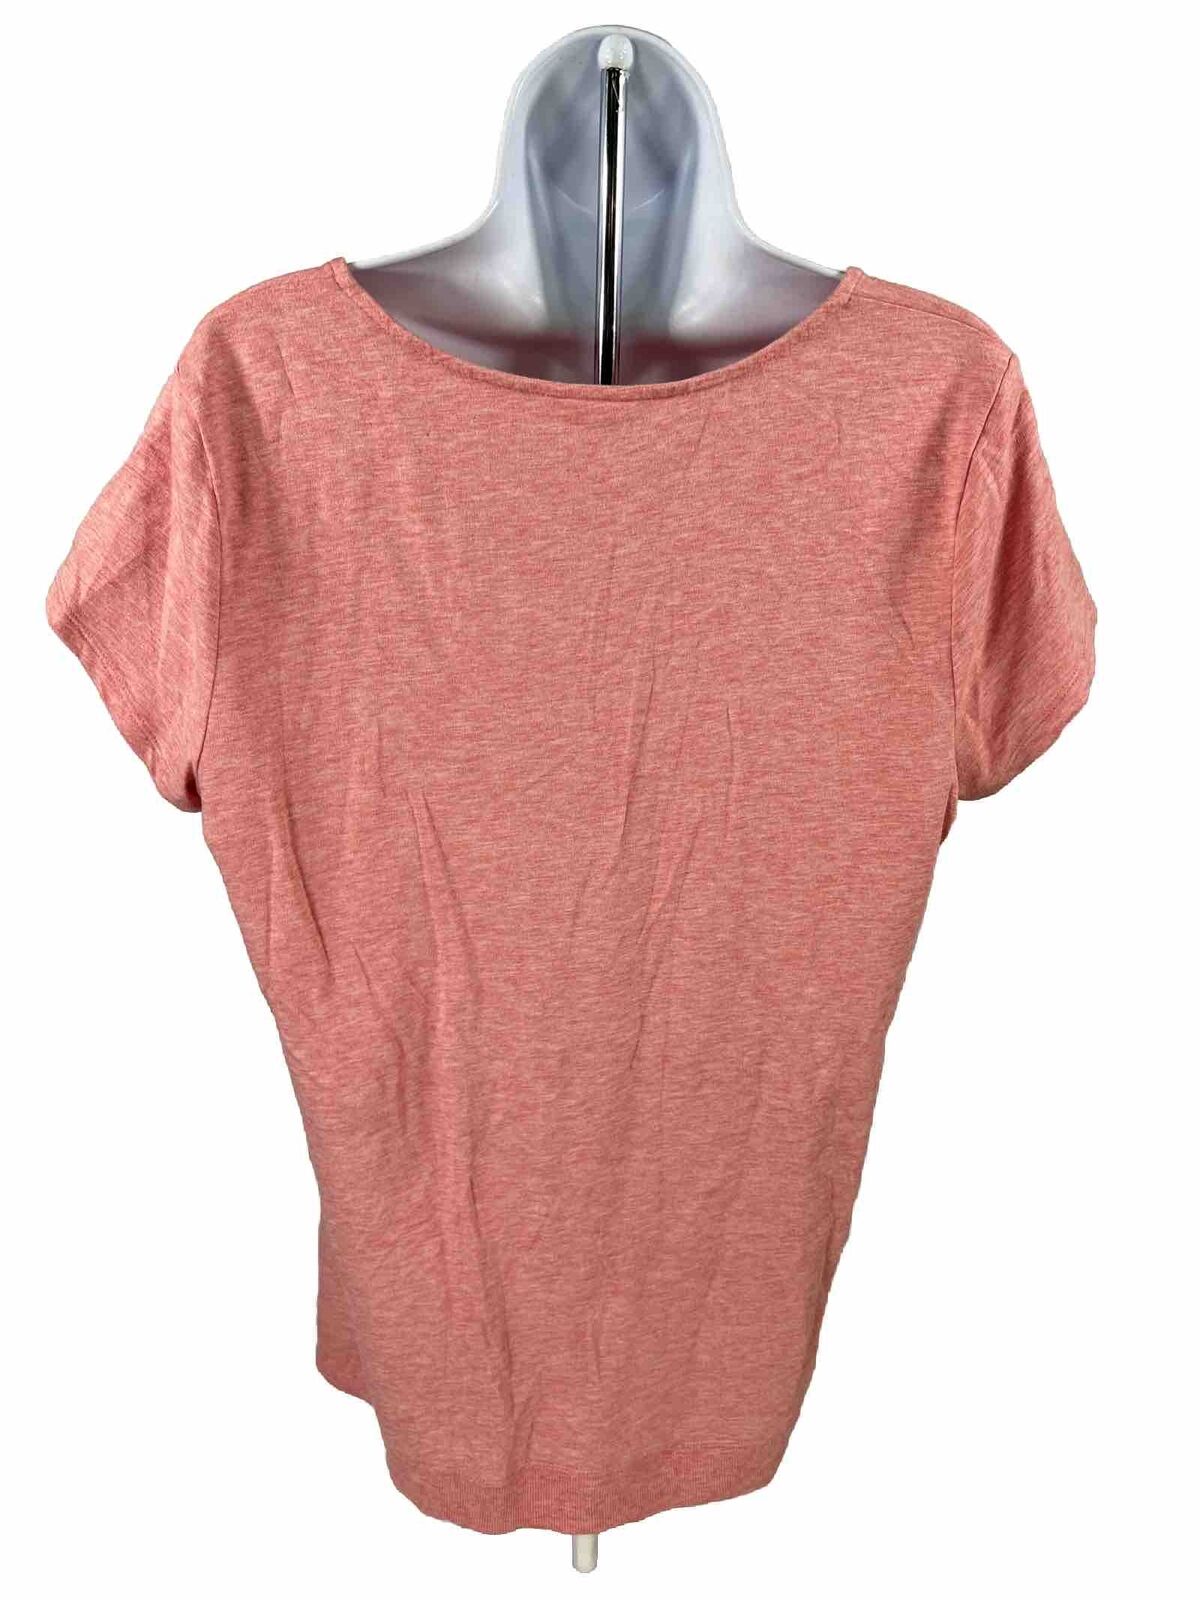 J.Jill Women's Pink Short Sleeve V-Neck T-Shirt - M